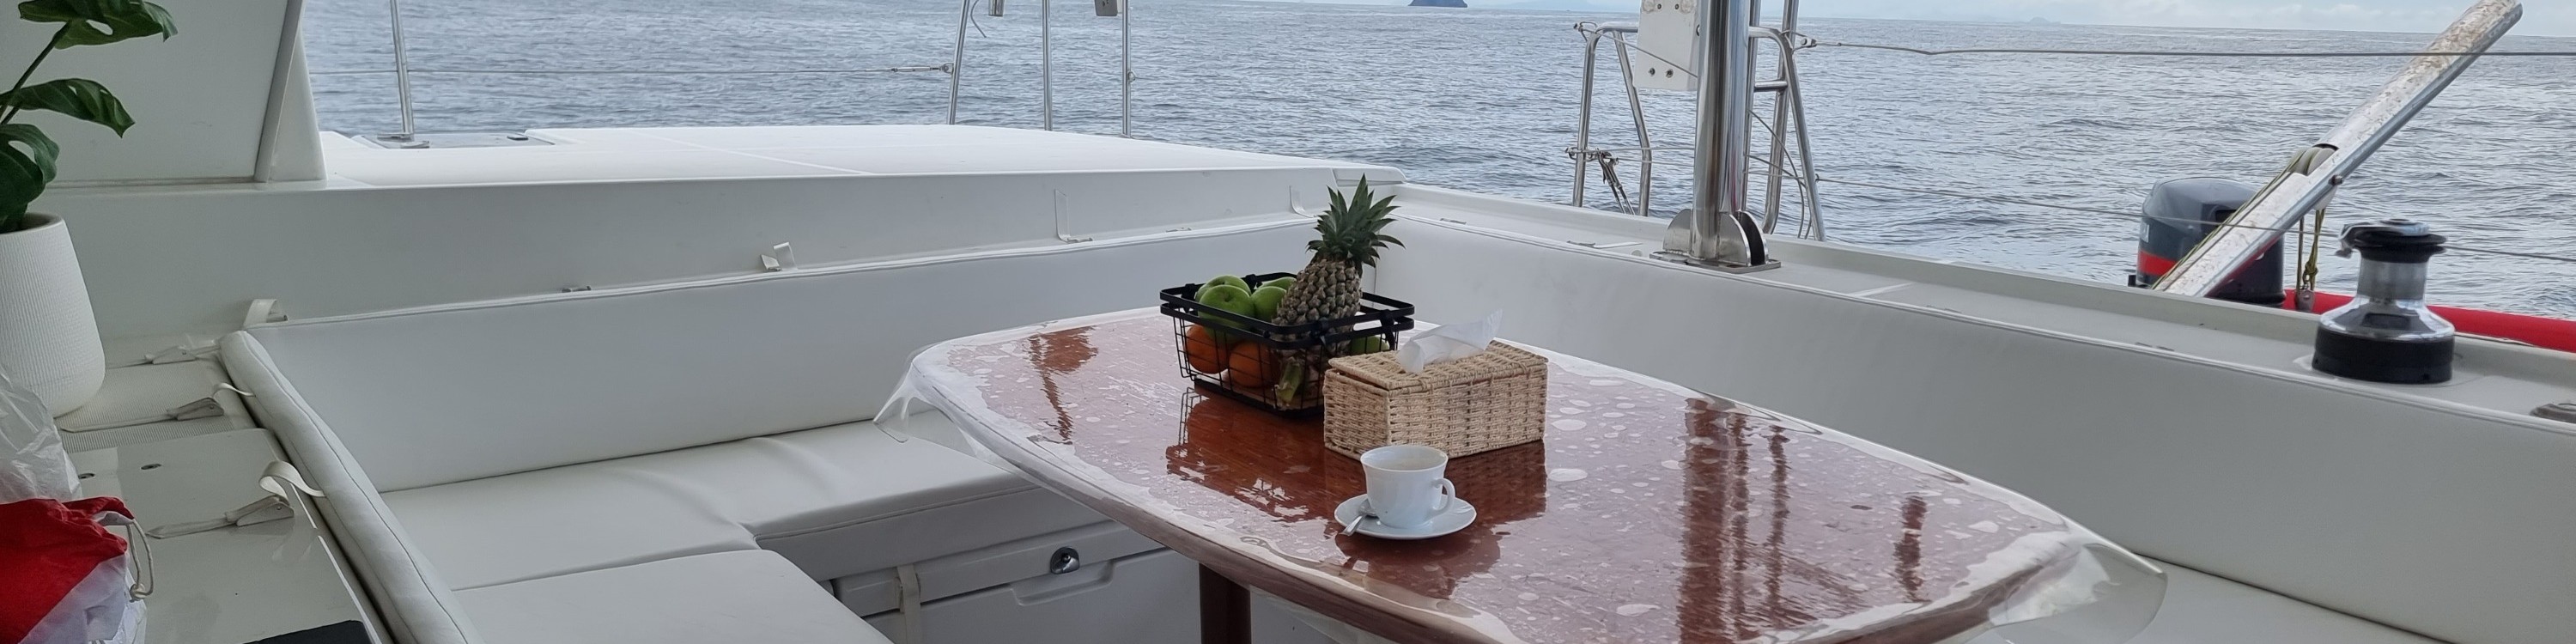 普吉島完美派提供的米婭女士雙體船私人包船之旅